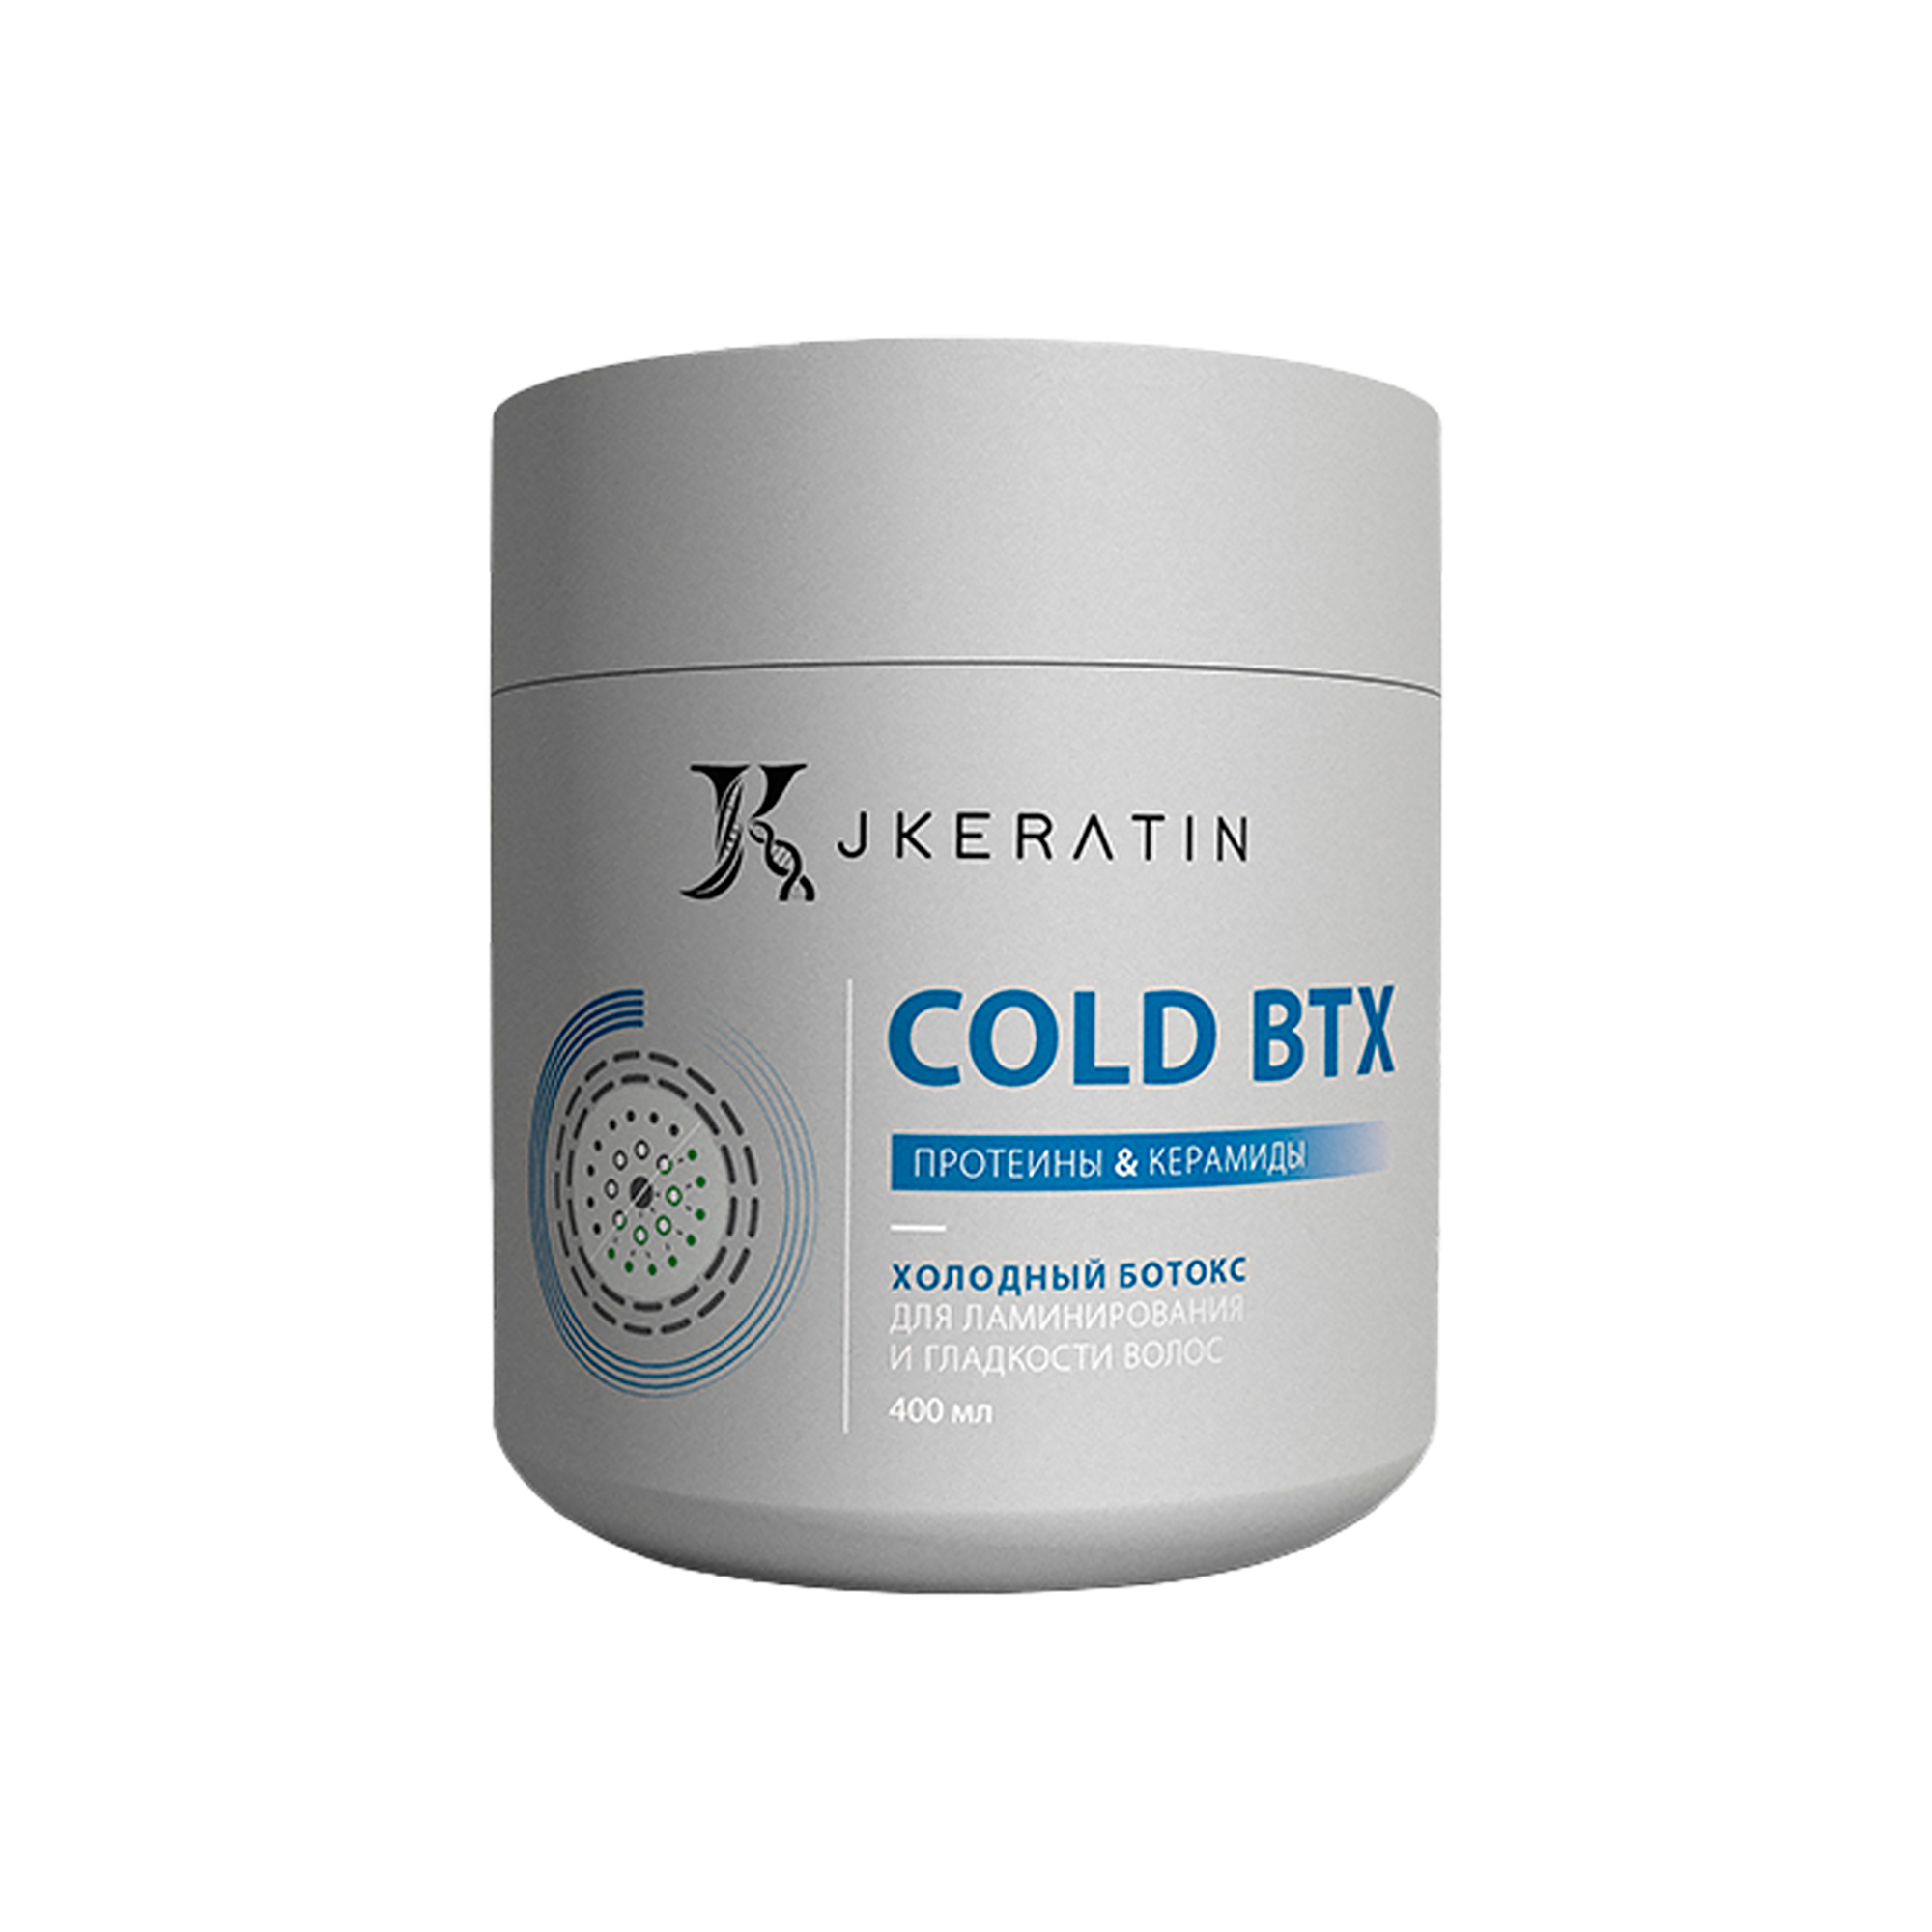 Холодный ботокс JKeratin Cold BTX для ламинирования и гладкости волос, 400 мл никотиновая кислота д волос мирролла 65мл